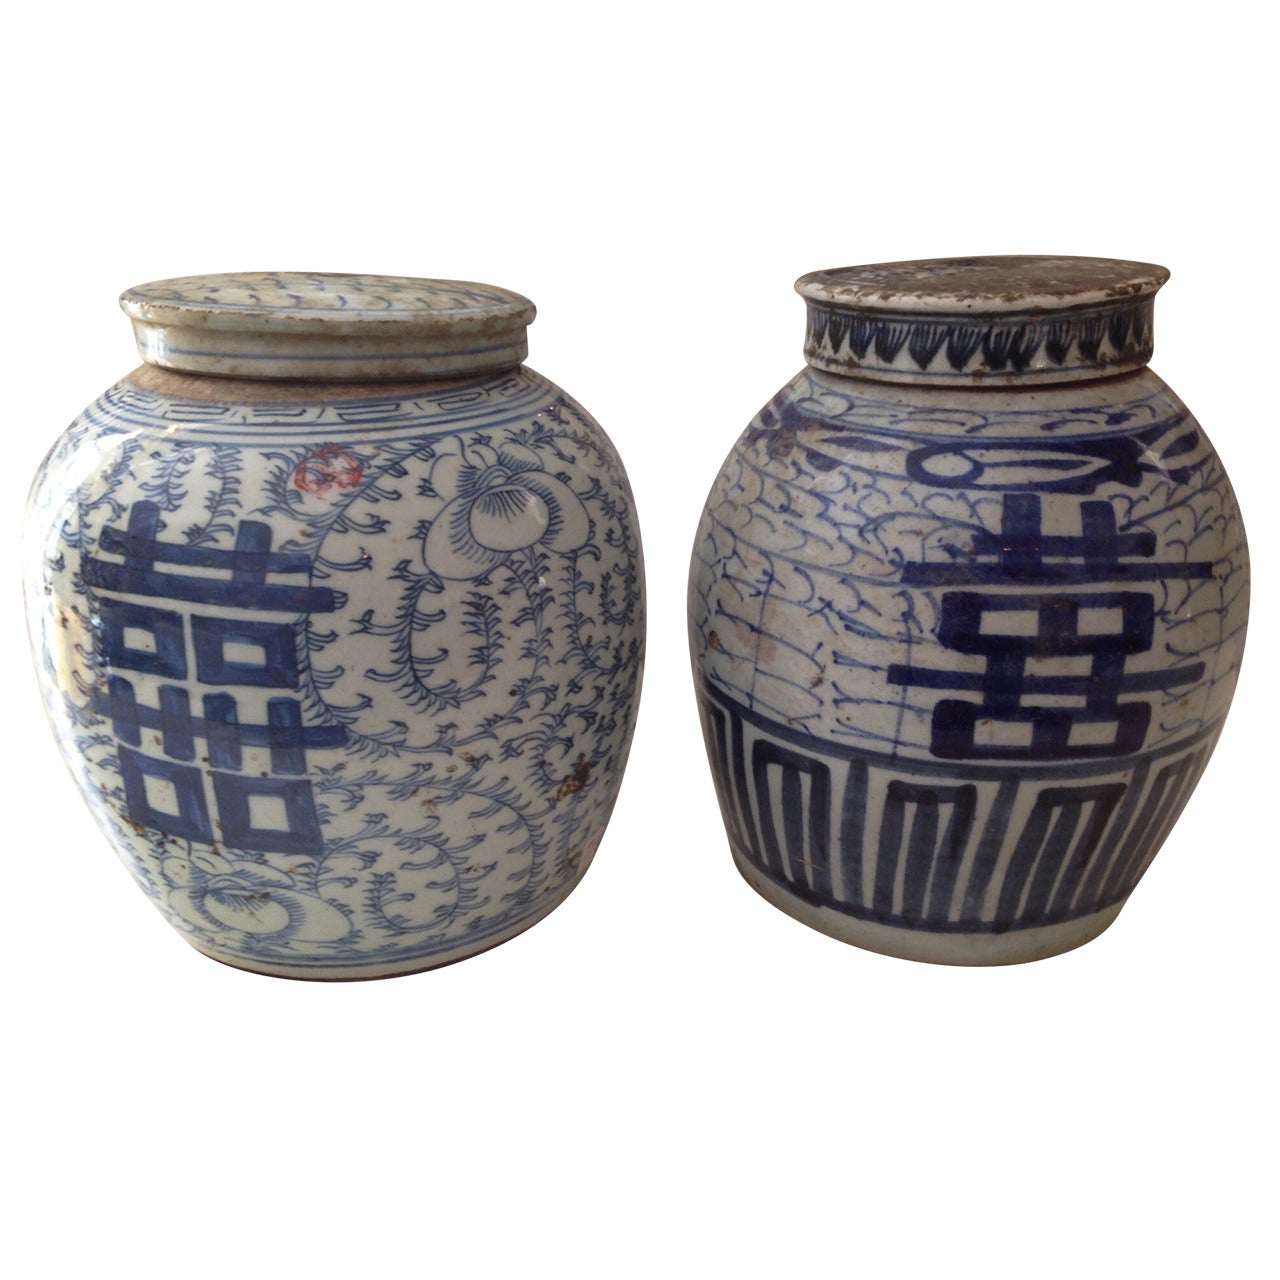 Qing Dynasty Porcelain Ginger Jars